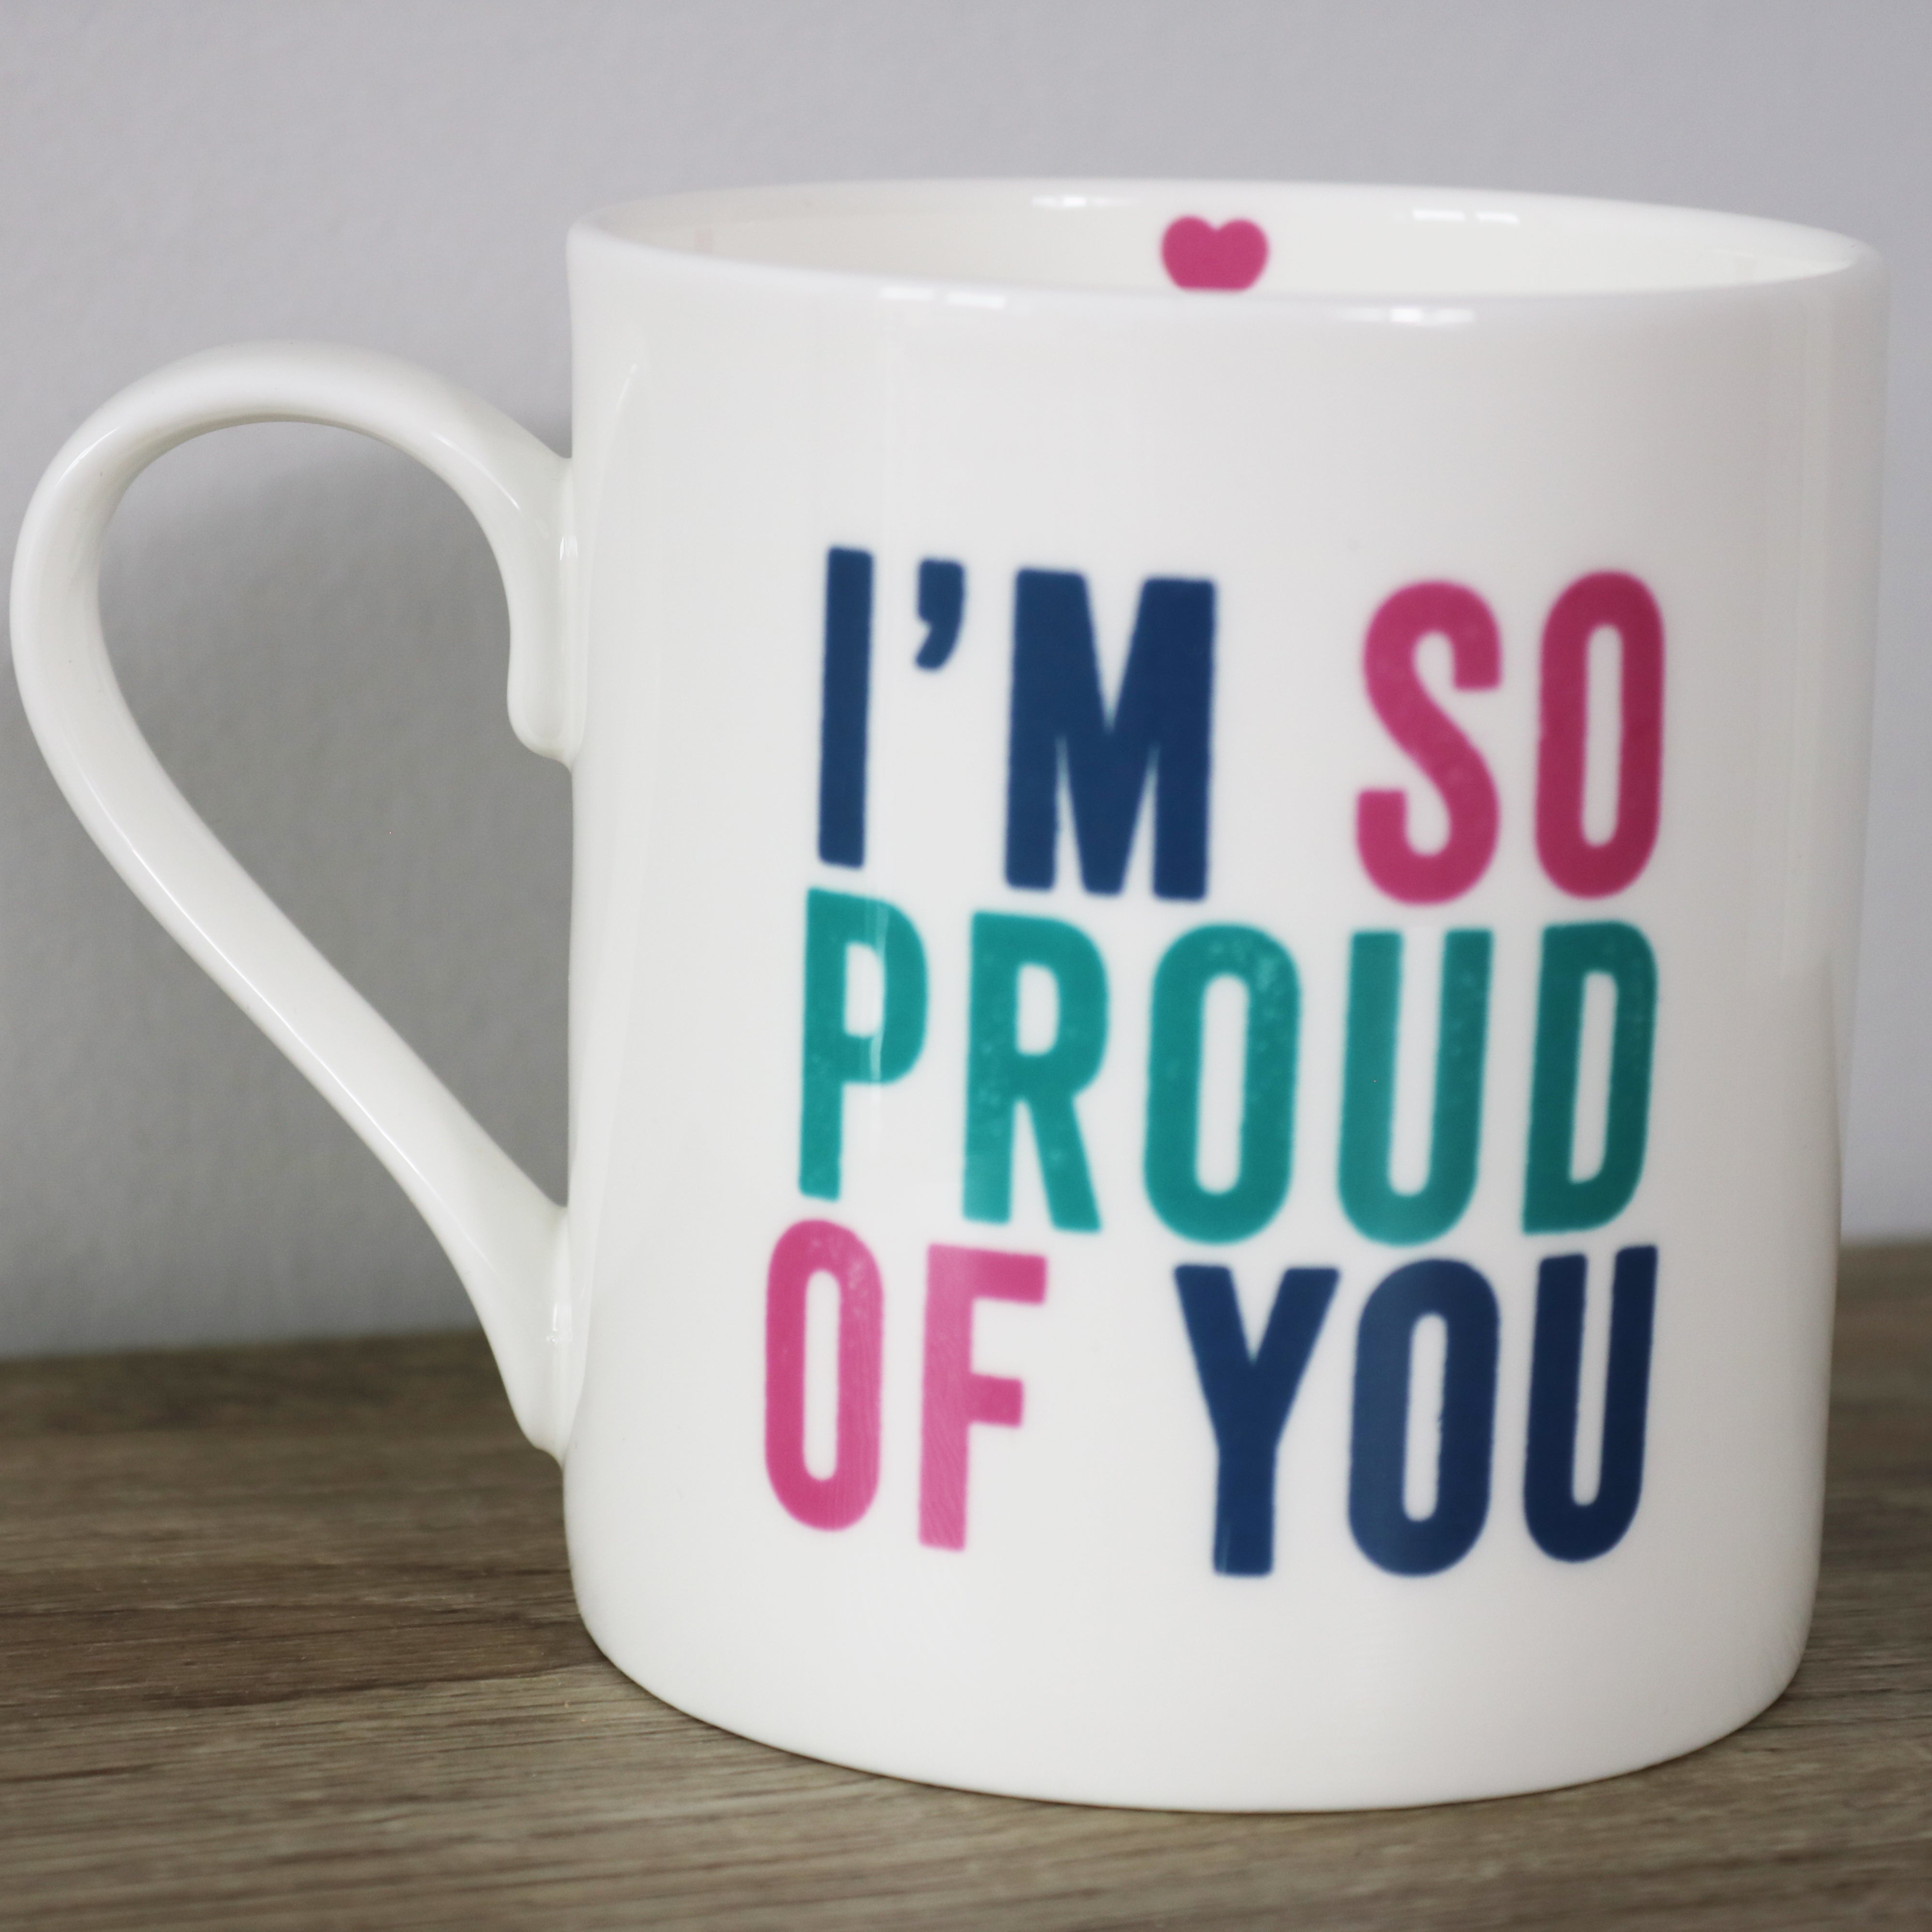 I'm So Proud of You Large Mug